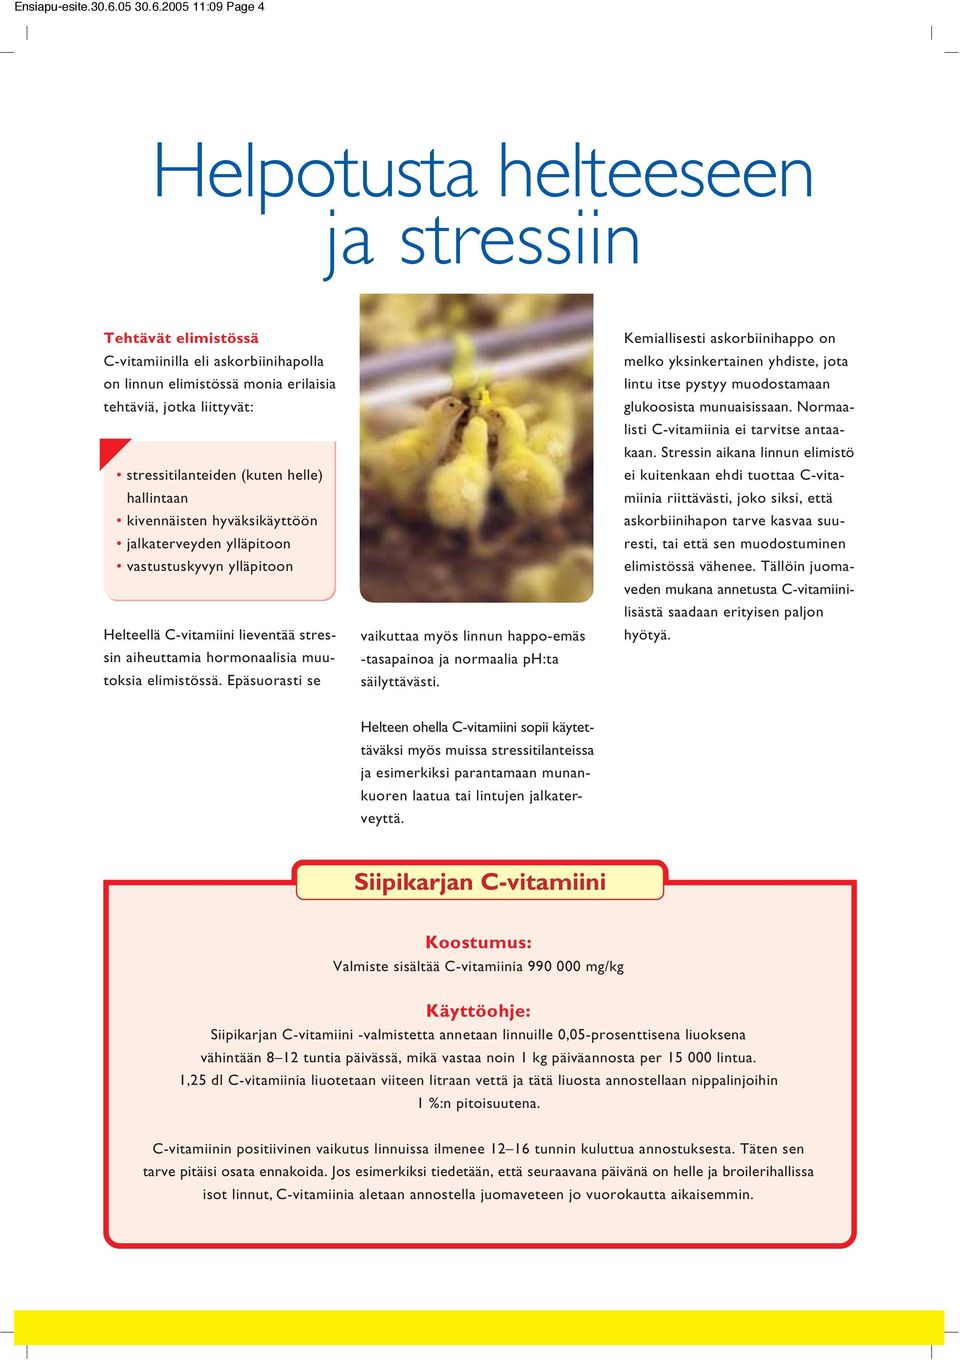 2005 11:09 Page 4 Helpotusta helteeseen ja stressiin Tehtävät elimistössä C-vitamiinilla eli askorbiinihapolla on linnun elimistössä monia erilaisia tehtäviä, jotka liittyvät: stressitilanteiden